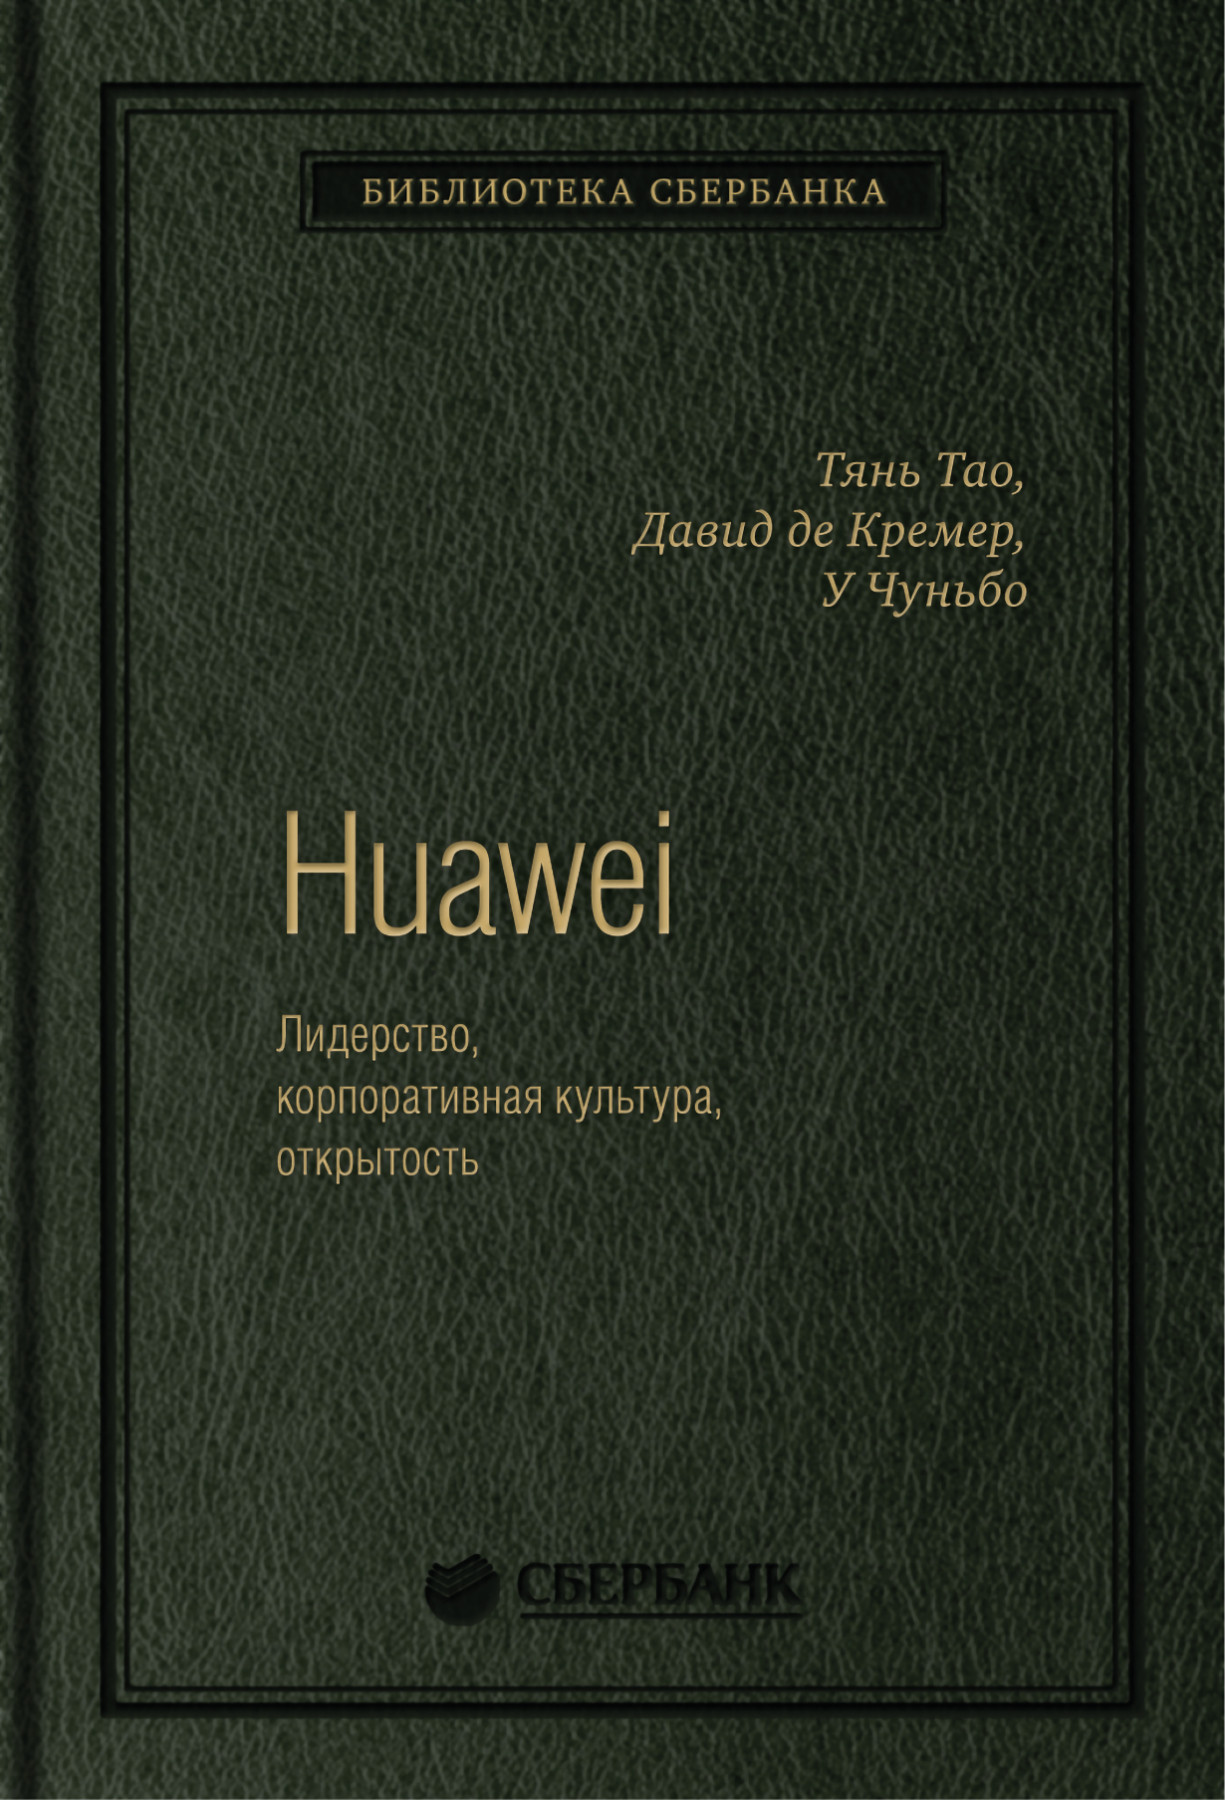 Huawei обложка.